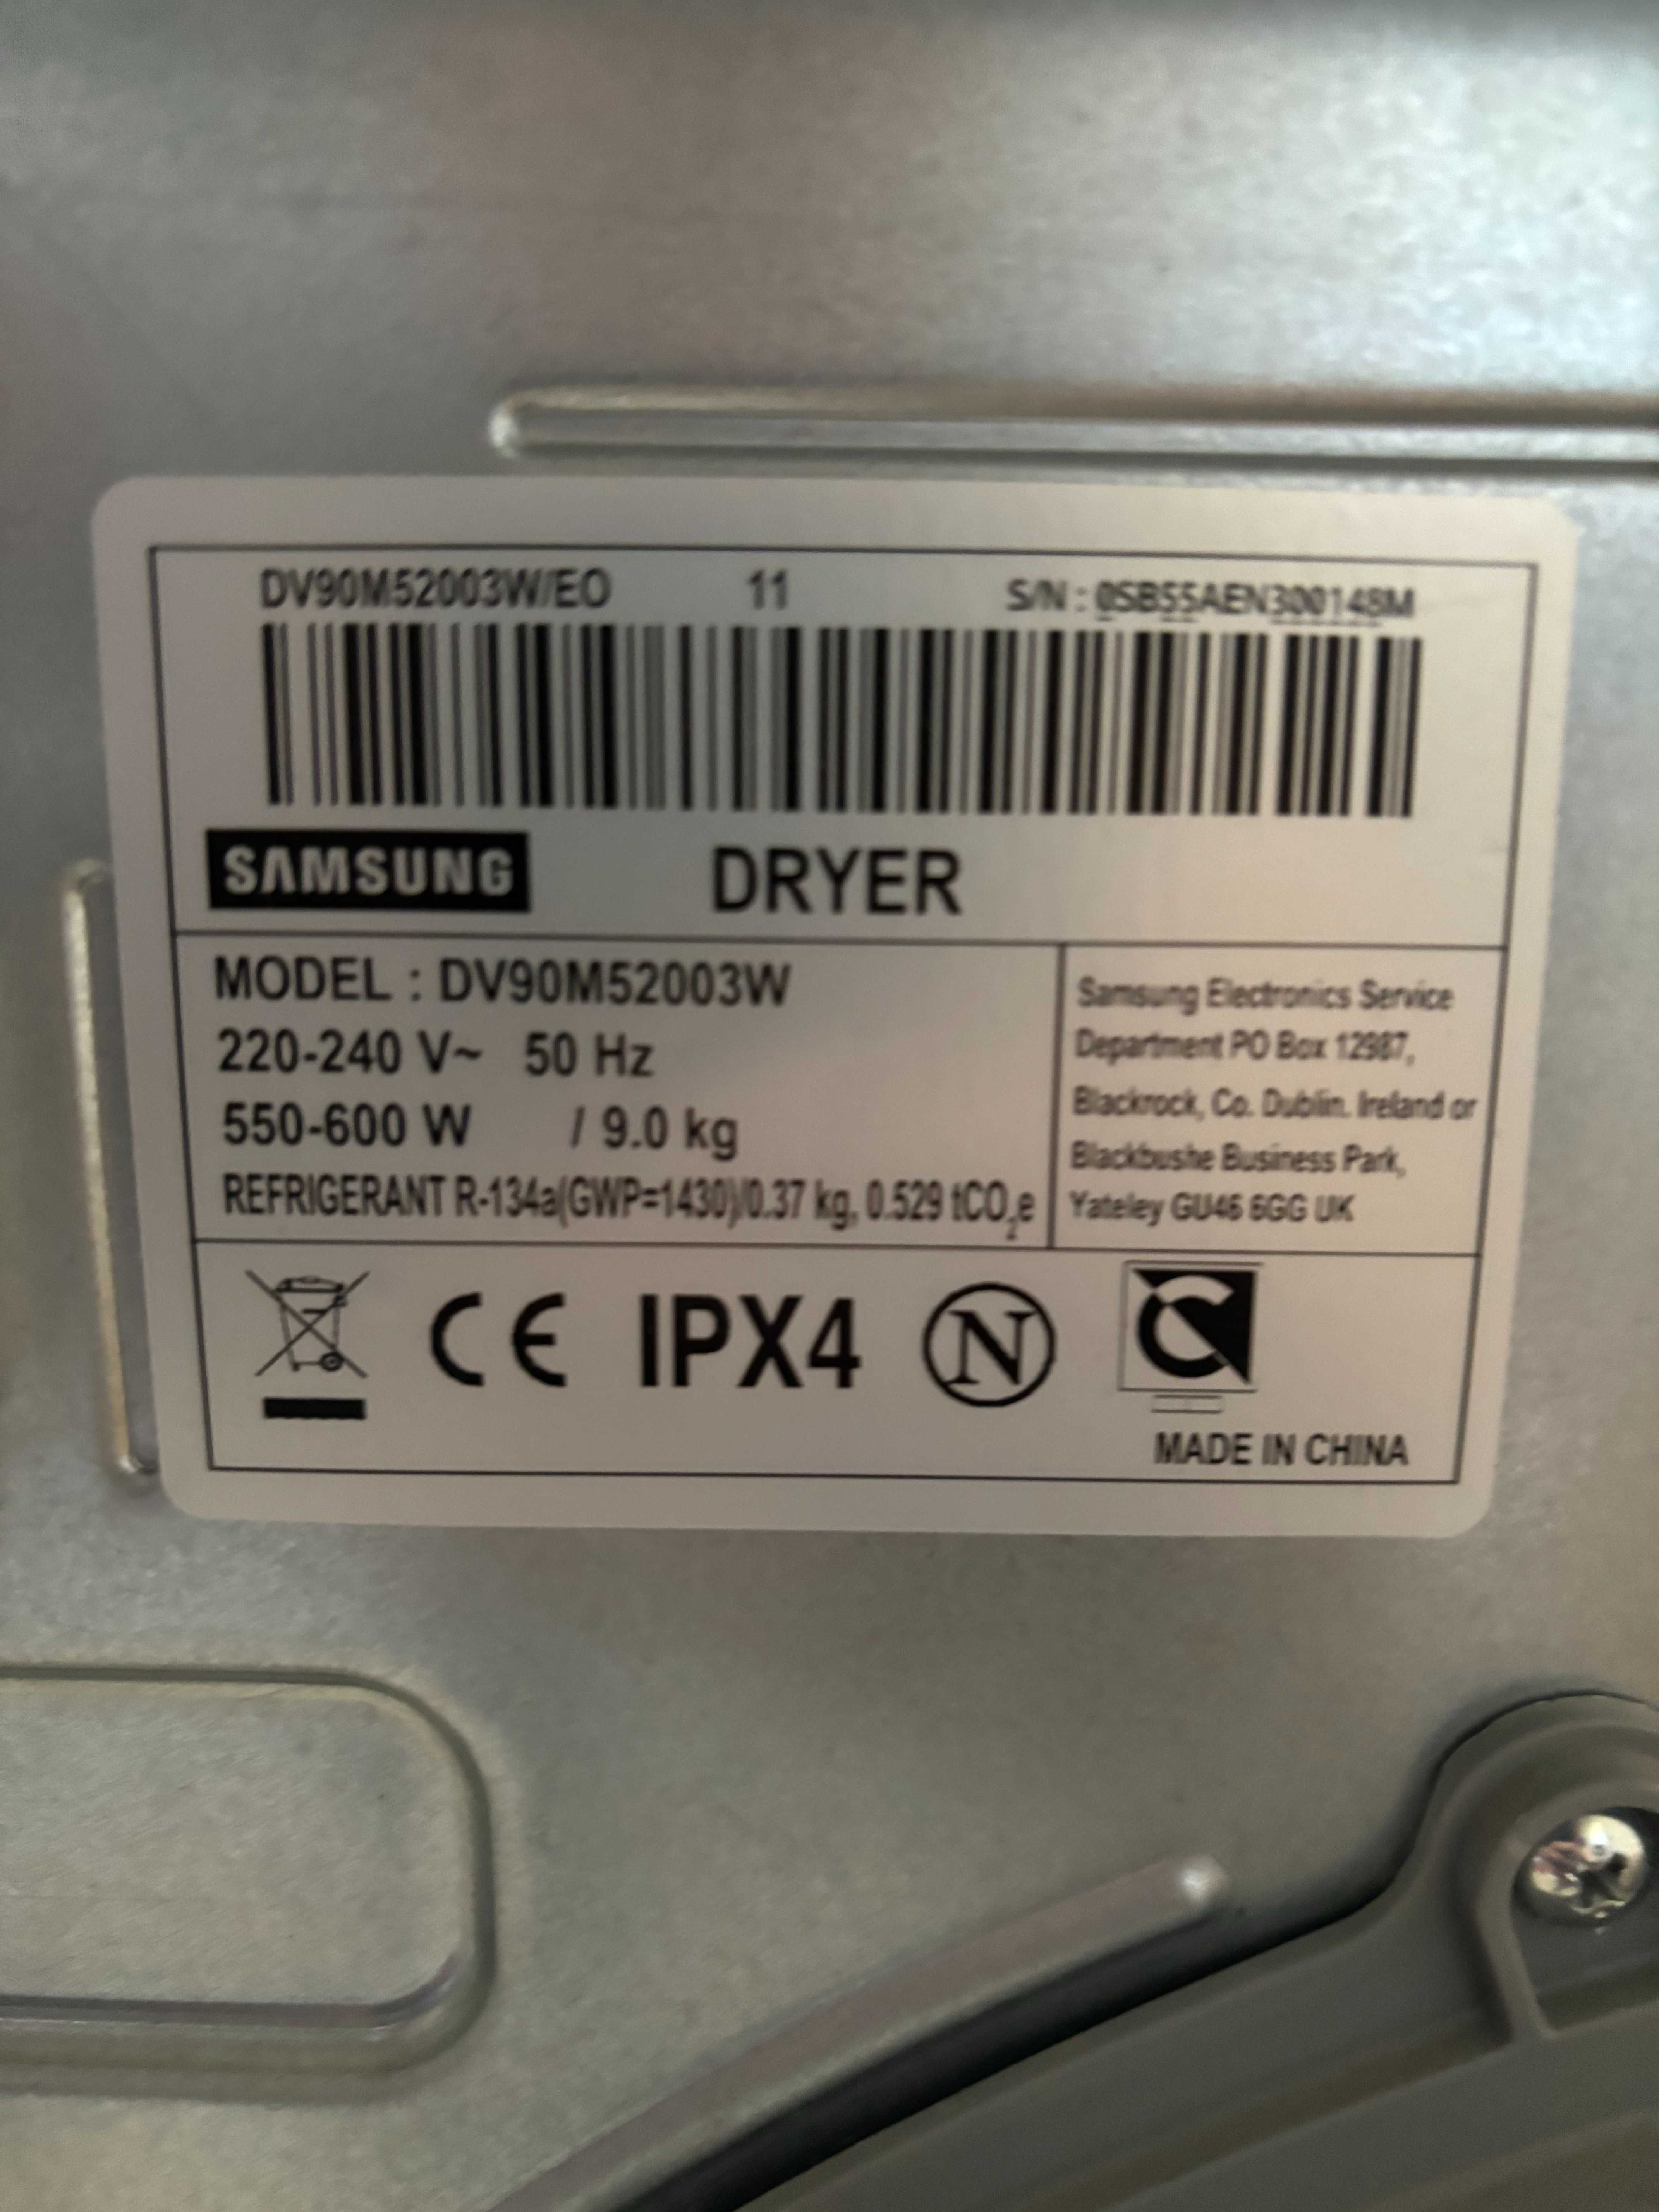 Noise Filter RDCF-2916 Filtr Samsung